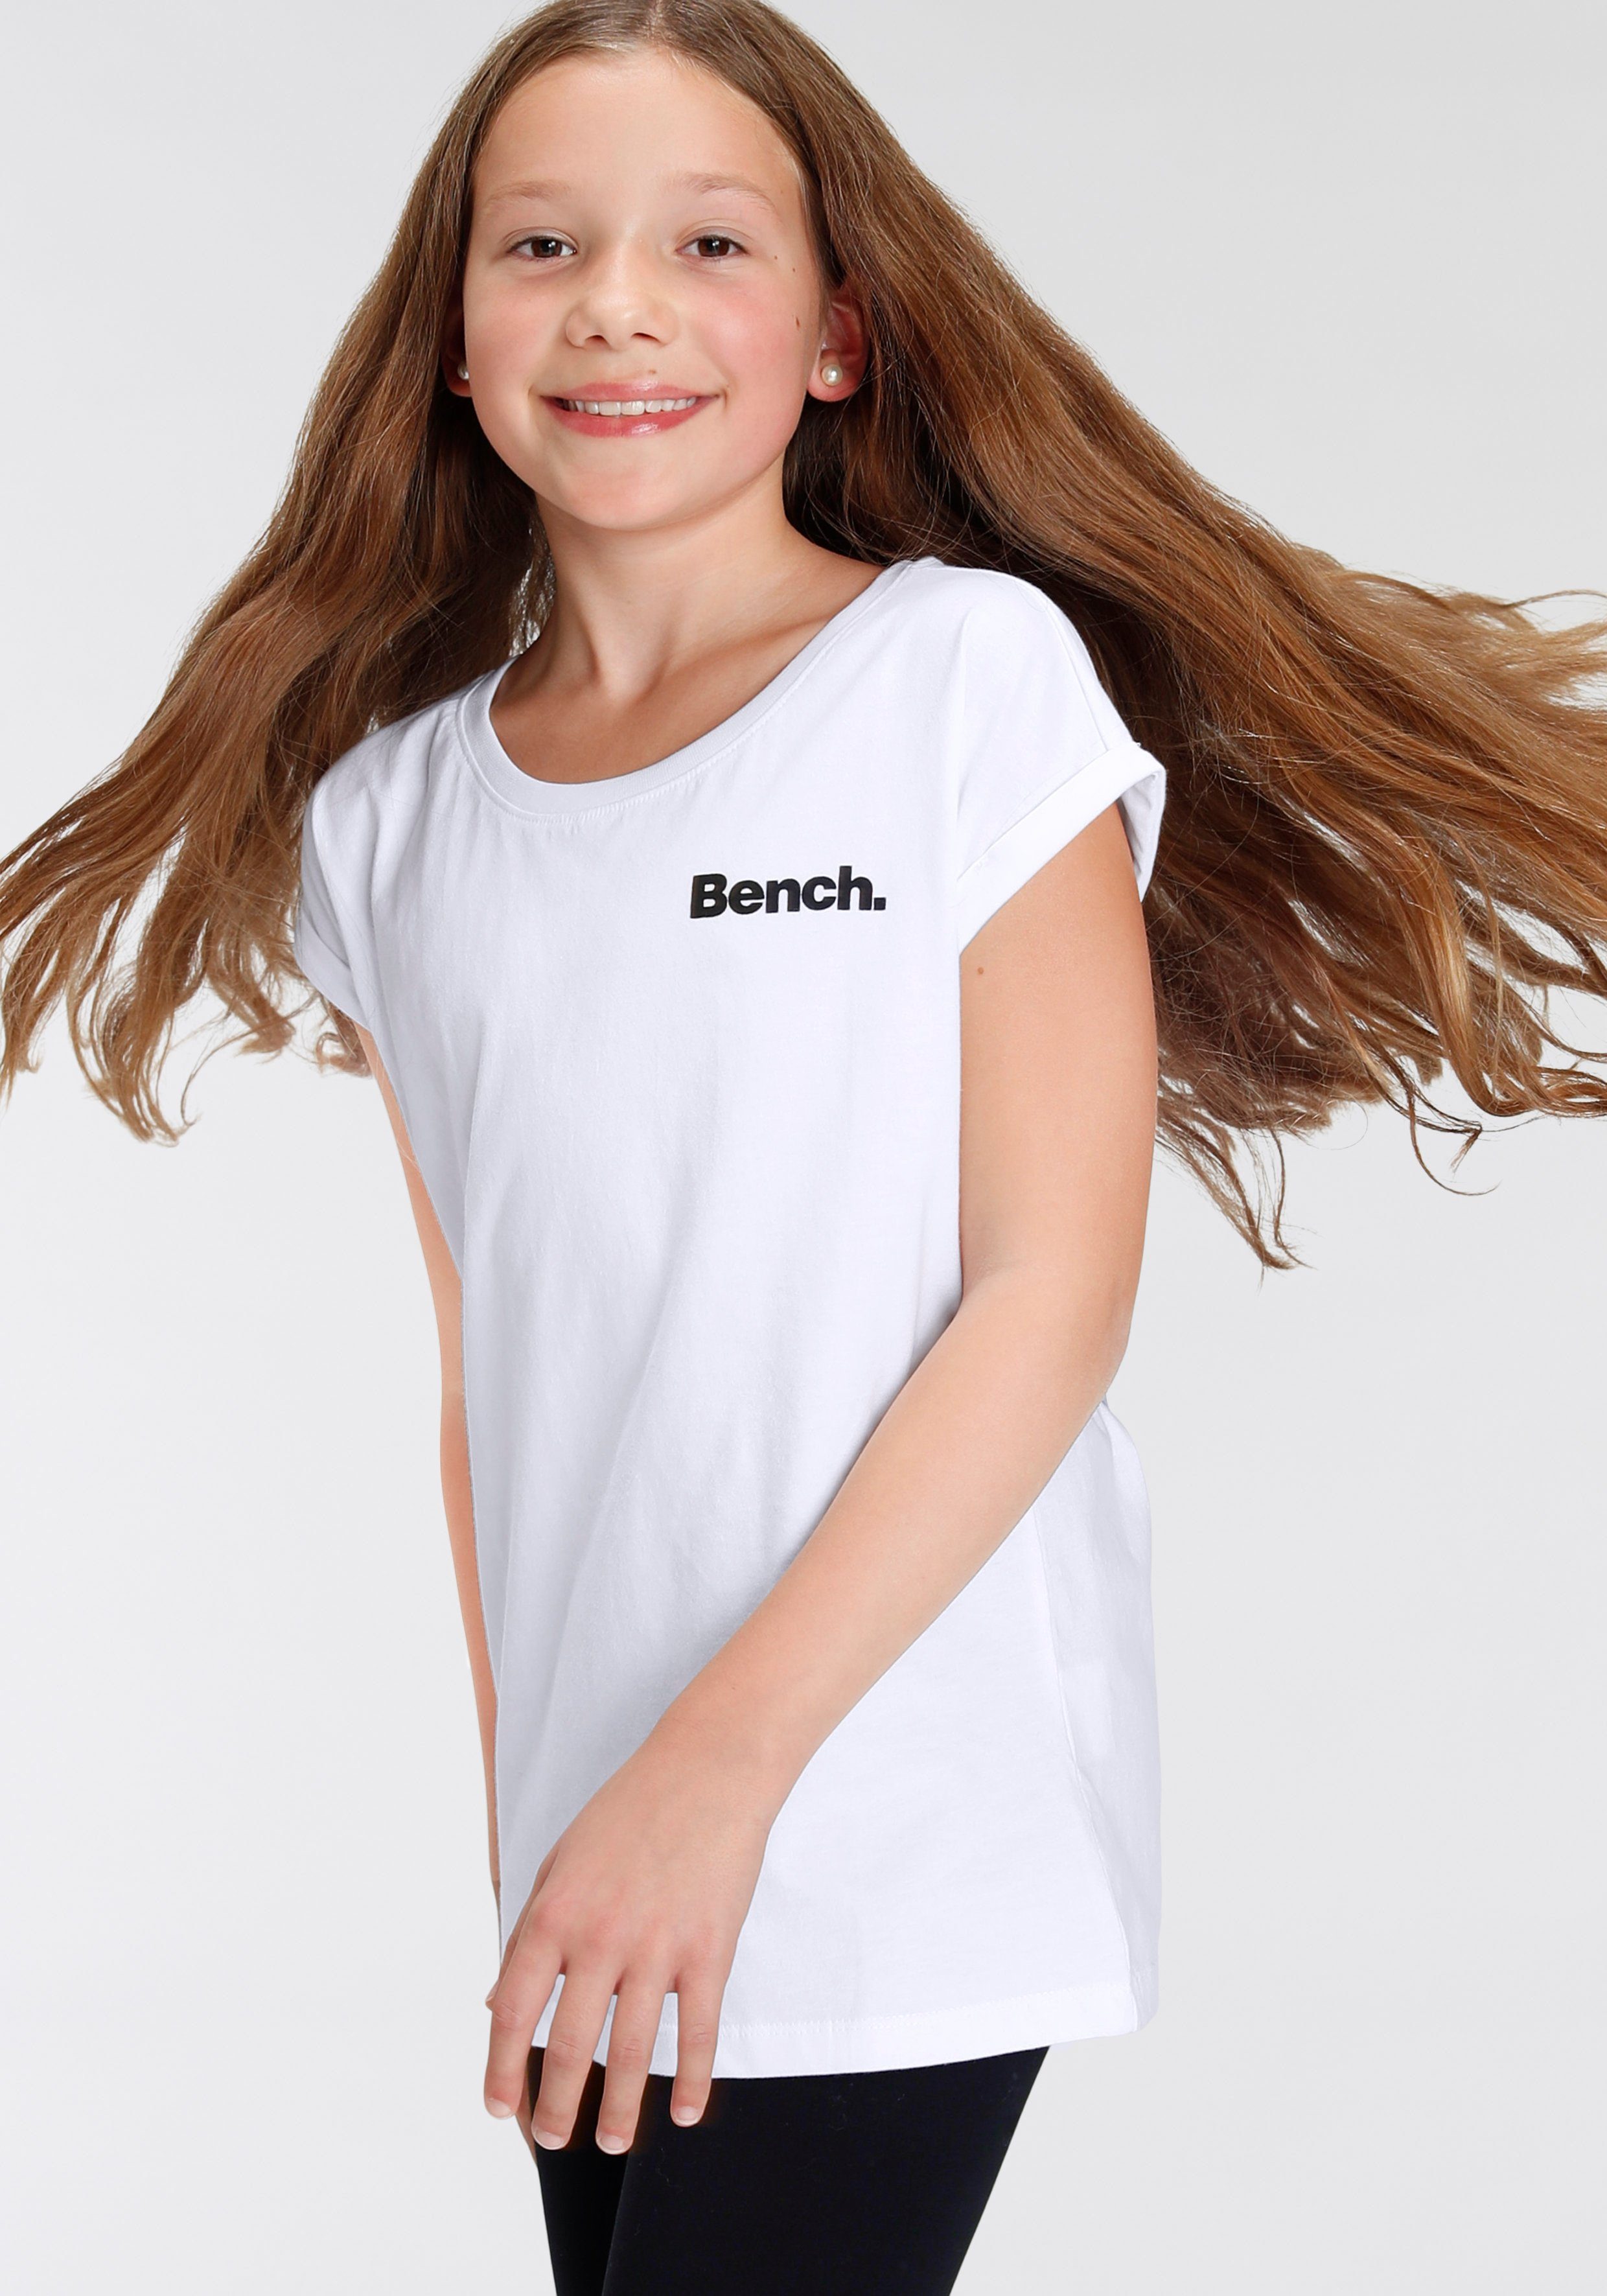 Bench. mit Fotodruck T-Shirt